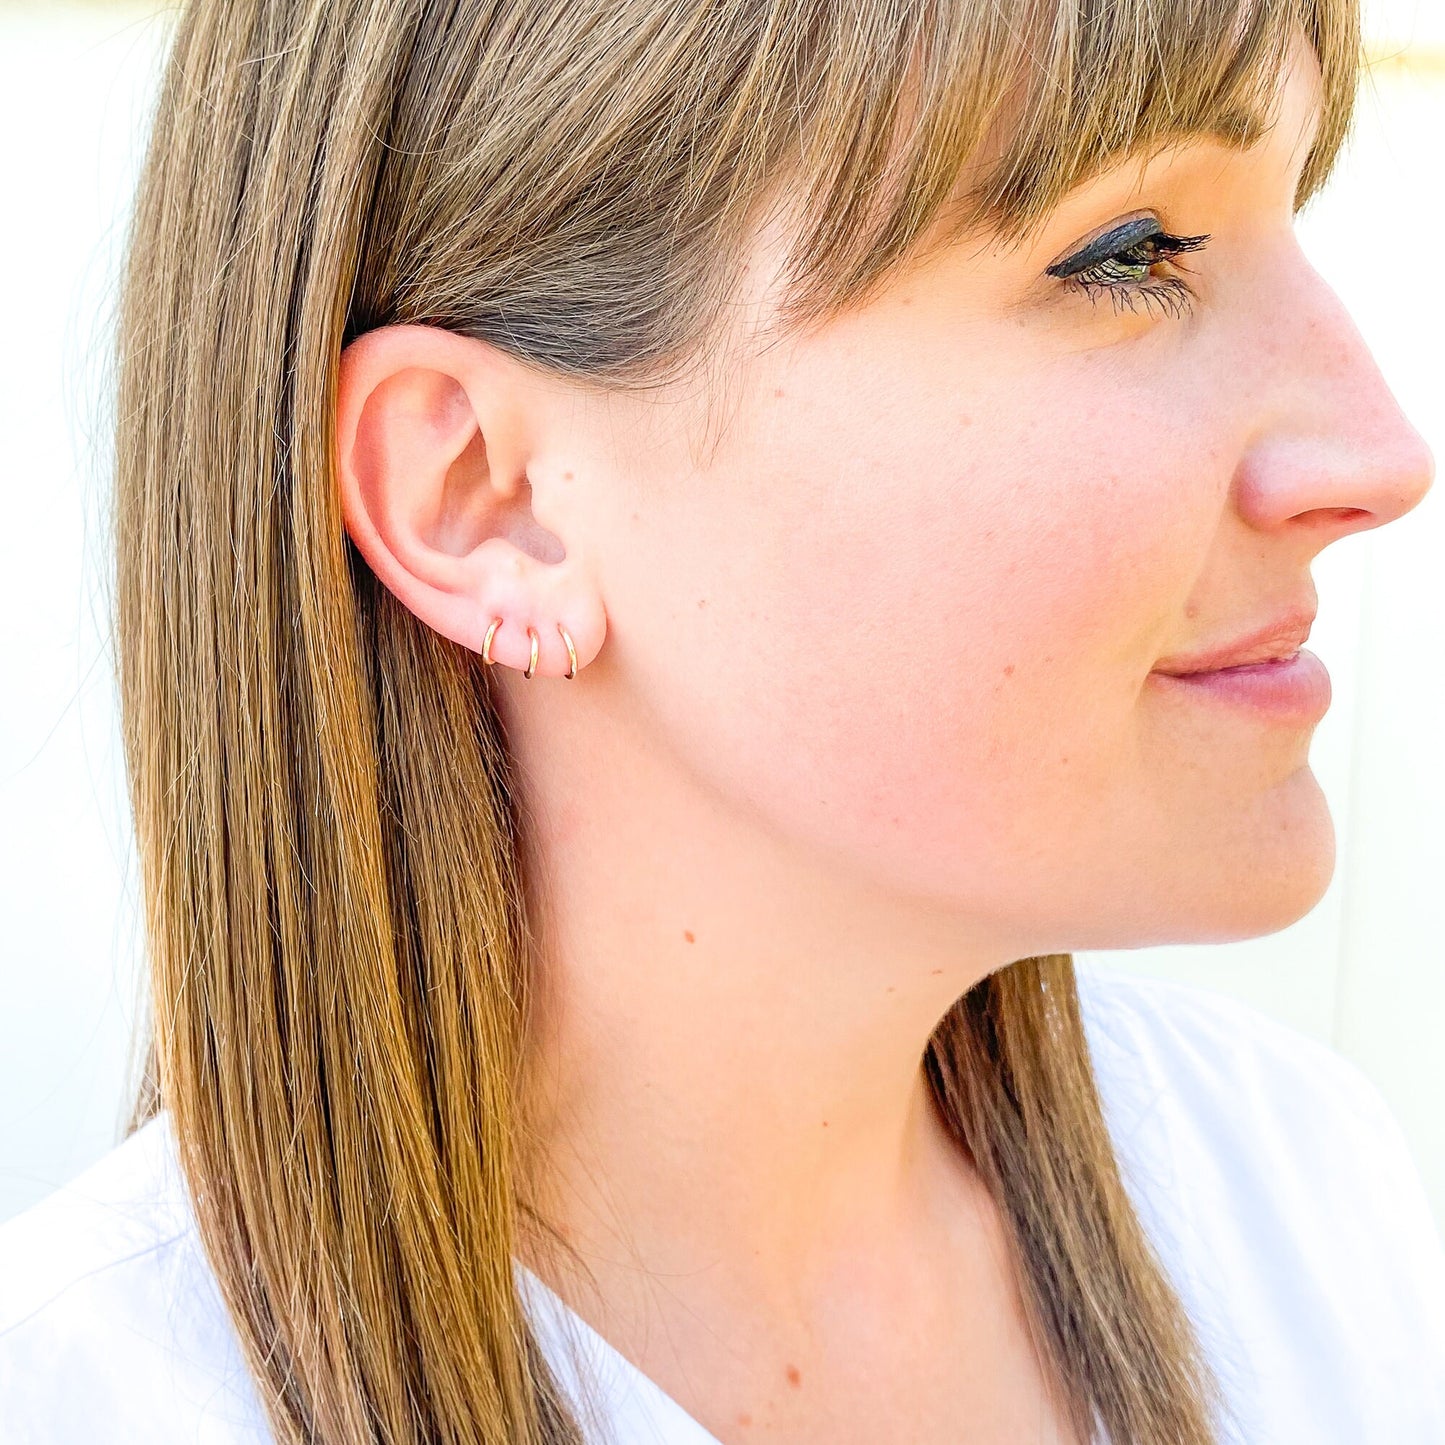 Single or Set of Hoop Earrings with Post